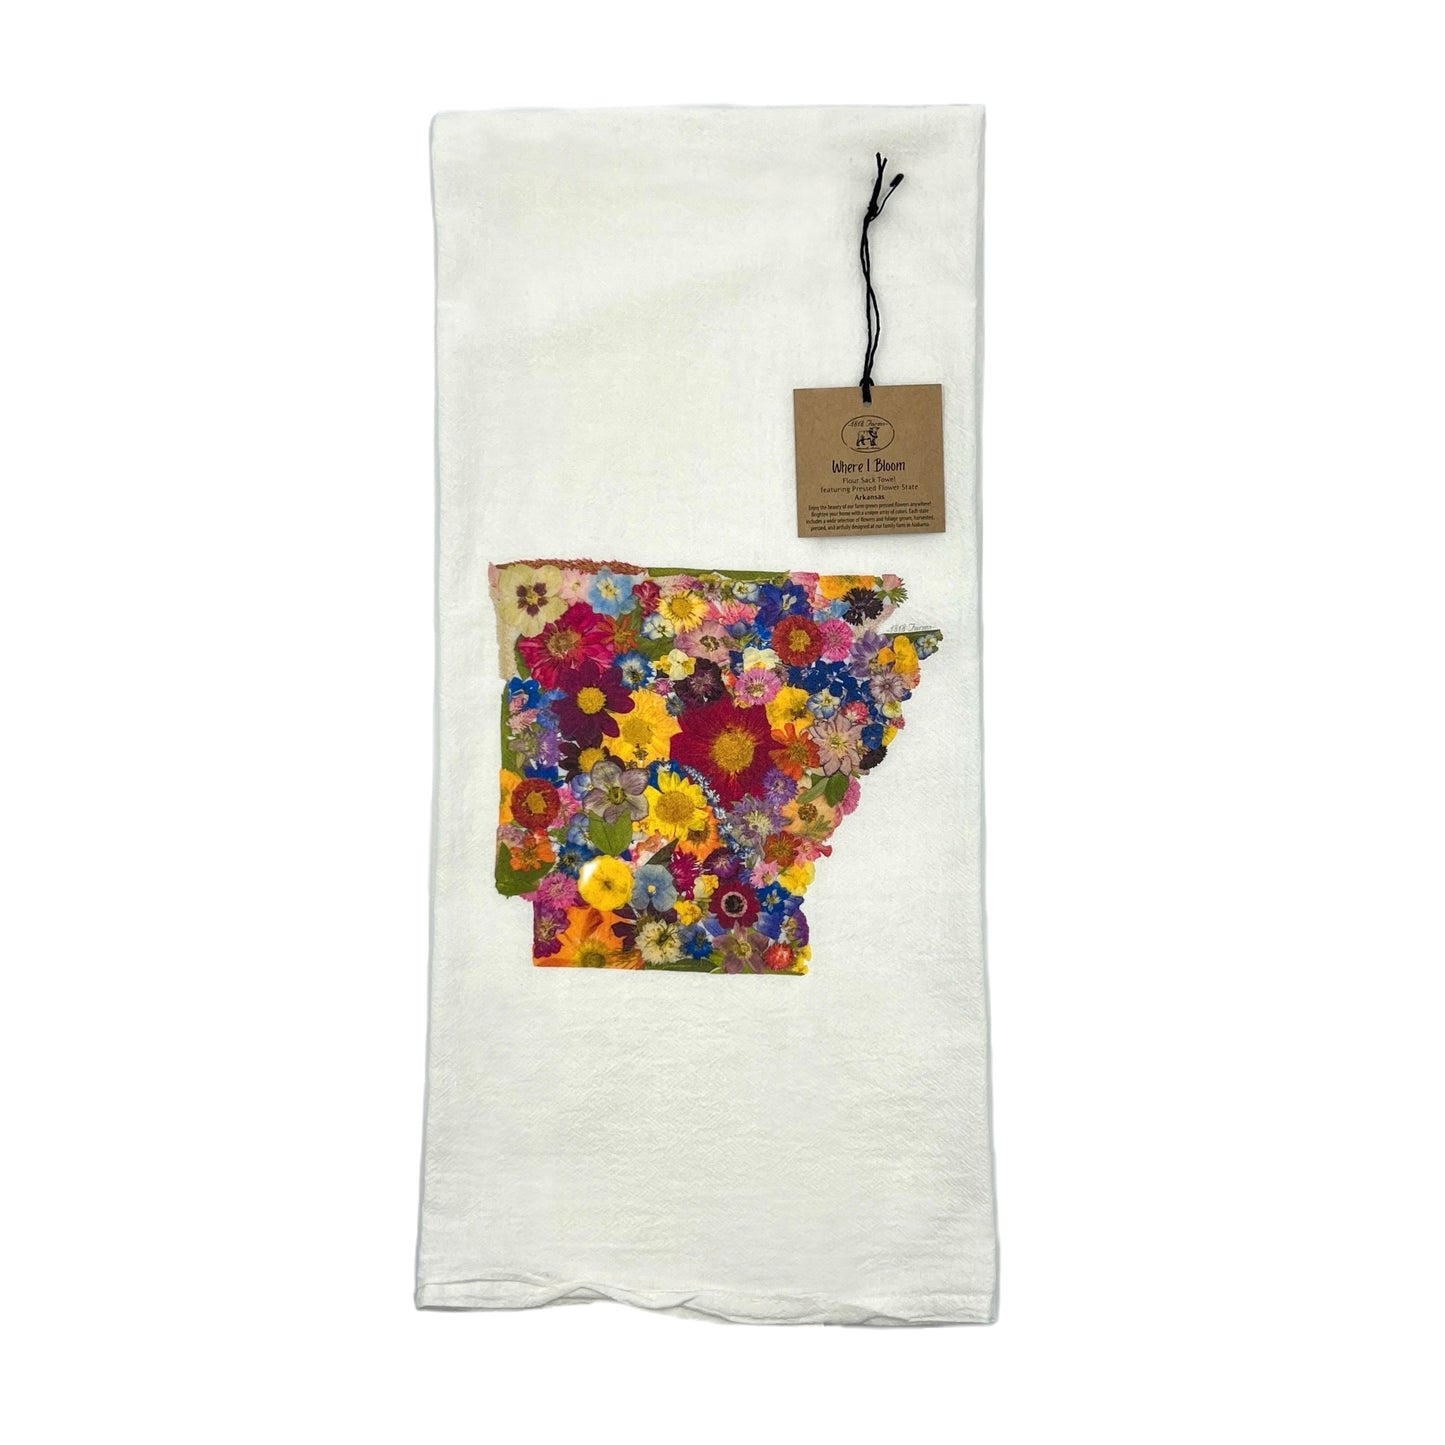 Arkansas Themed Flour Sack Towel  - "Where I Bloom" Collection Towel 1818 Farms   